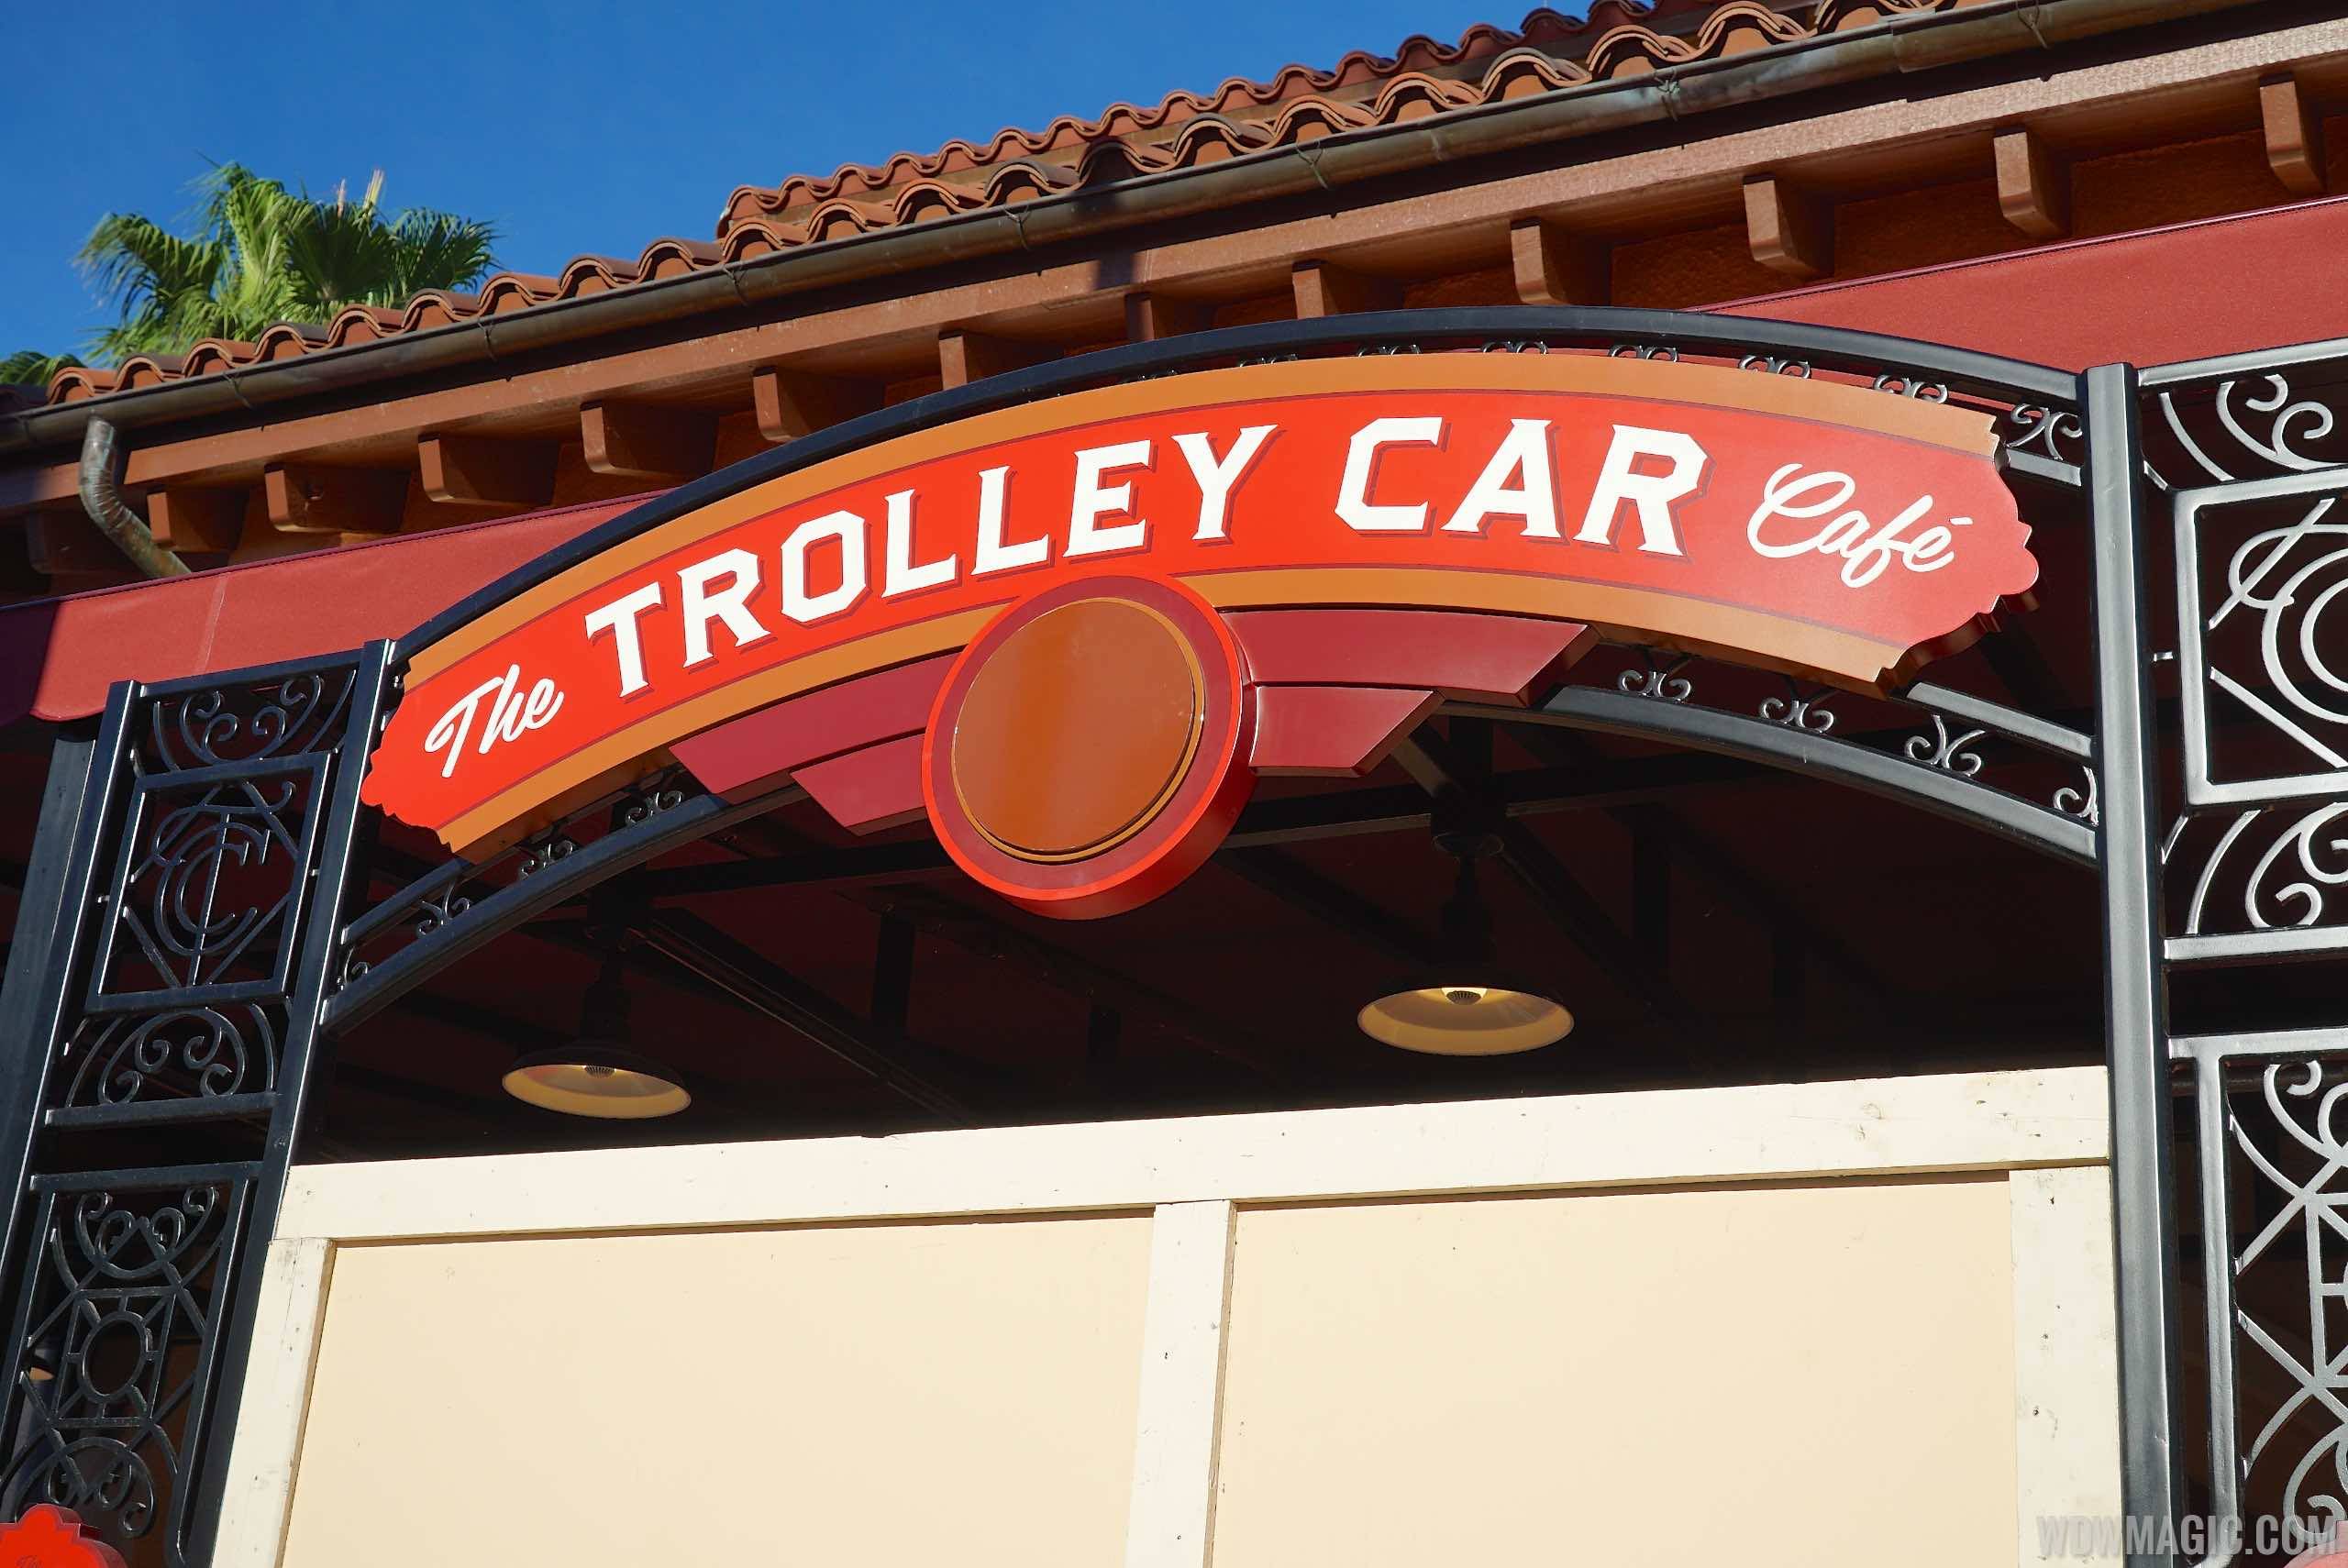 Trolley Car Cafe signage